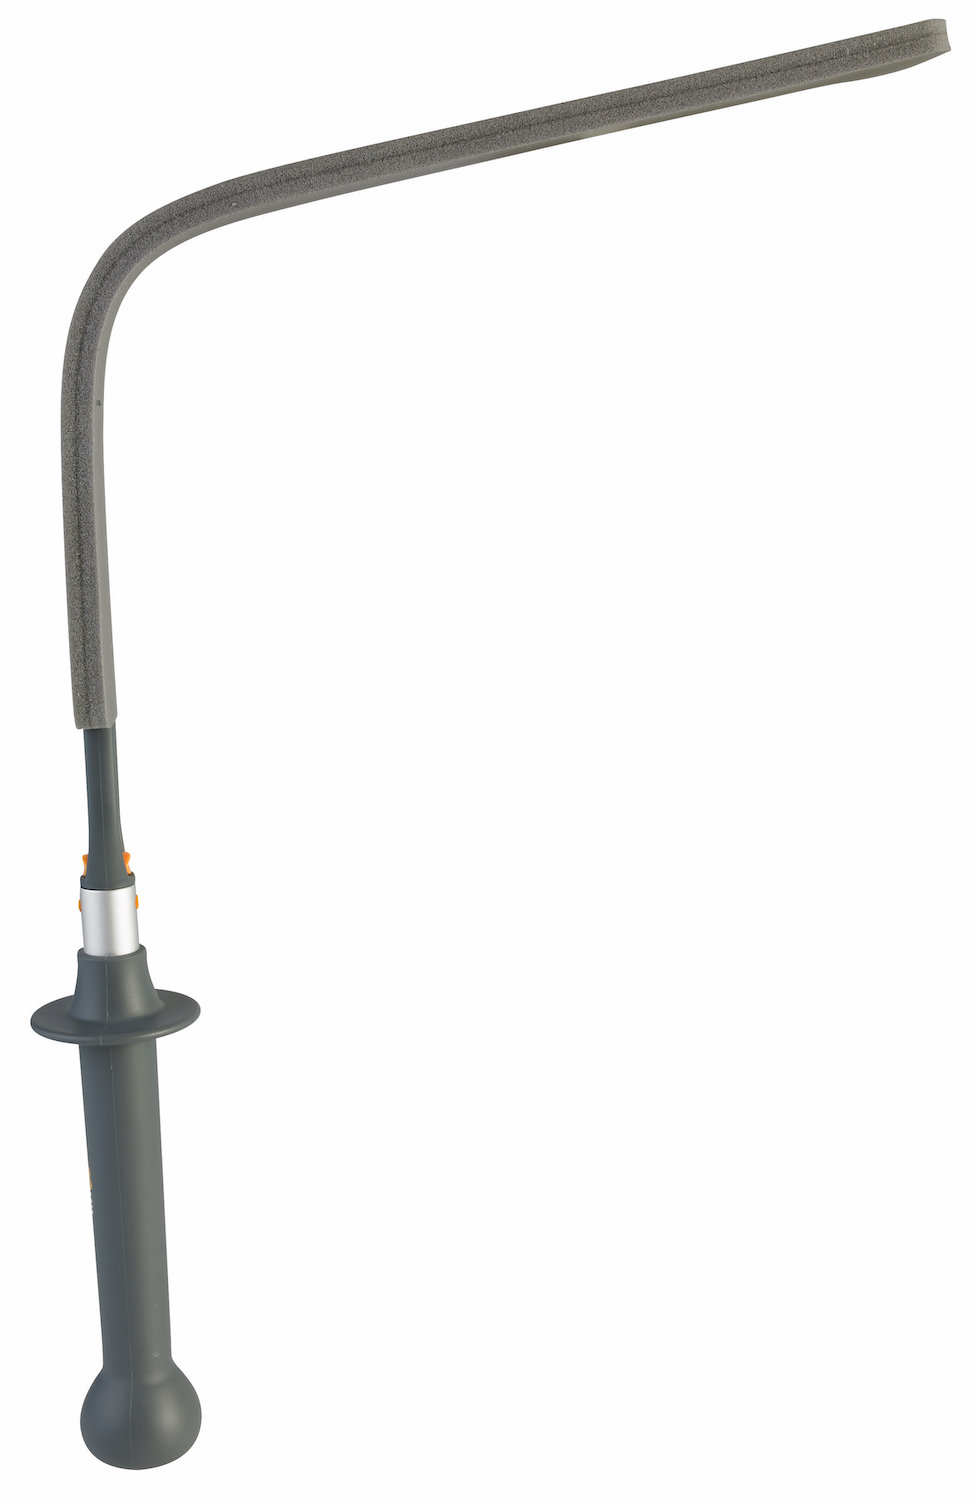 Interior mop holder, 810 mm, Grey